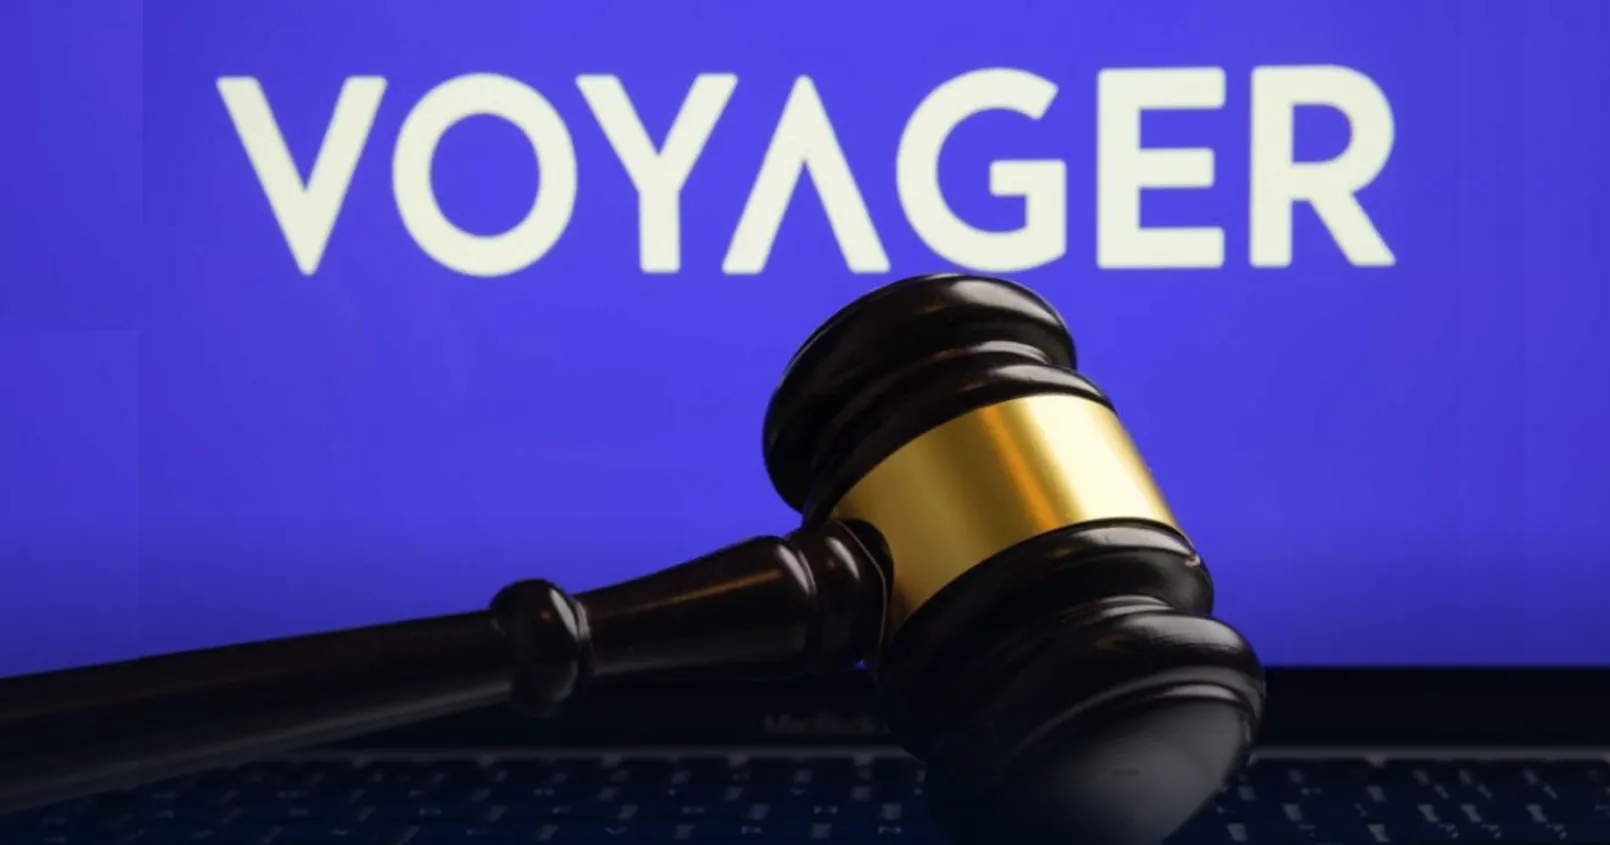 ศาลตัดสินให้ Voyager ออก Bankruptcy Token